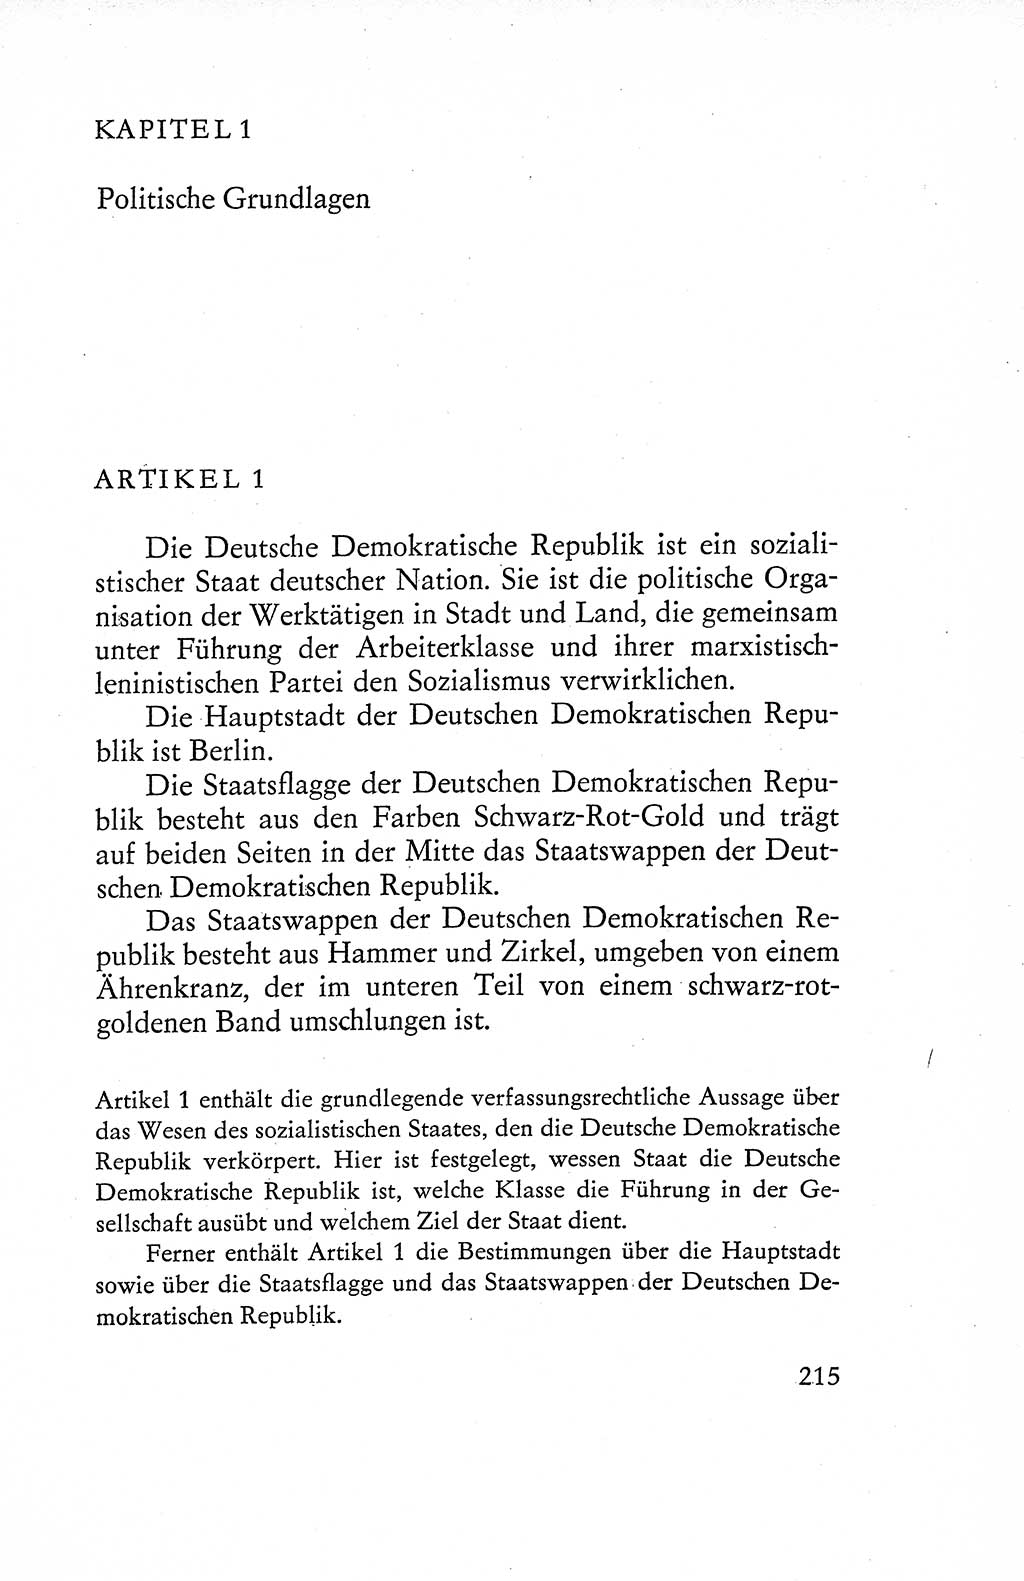 Verfassung der Deutschen Demokratischen Republik (DDR), Dokumente, Kommentar 1969, Band 1, Seite 215 (Verf. DDR Dok. Komm. 1969, Bd. 1, S. 215)